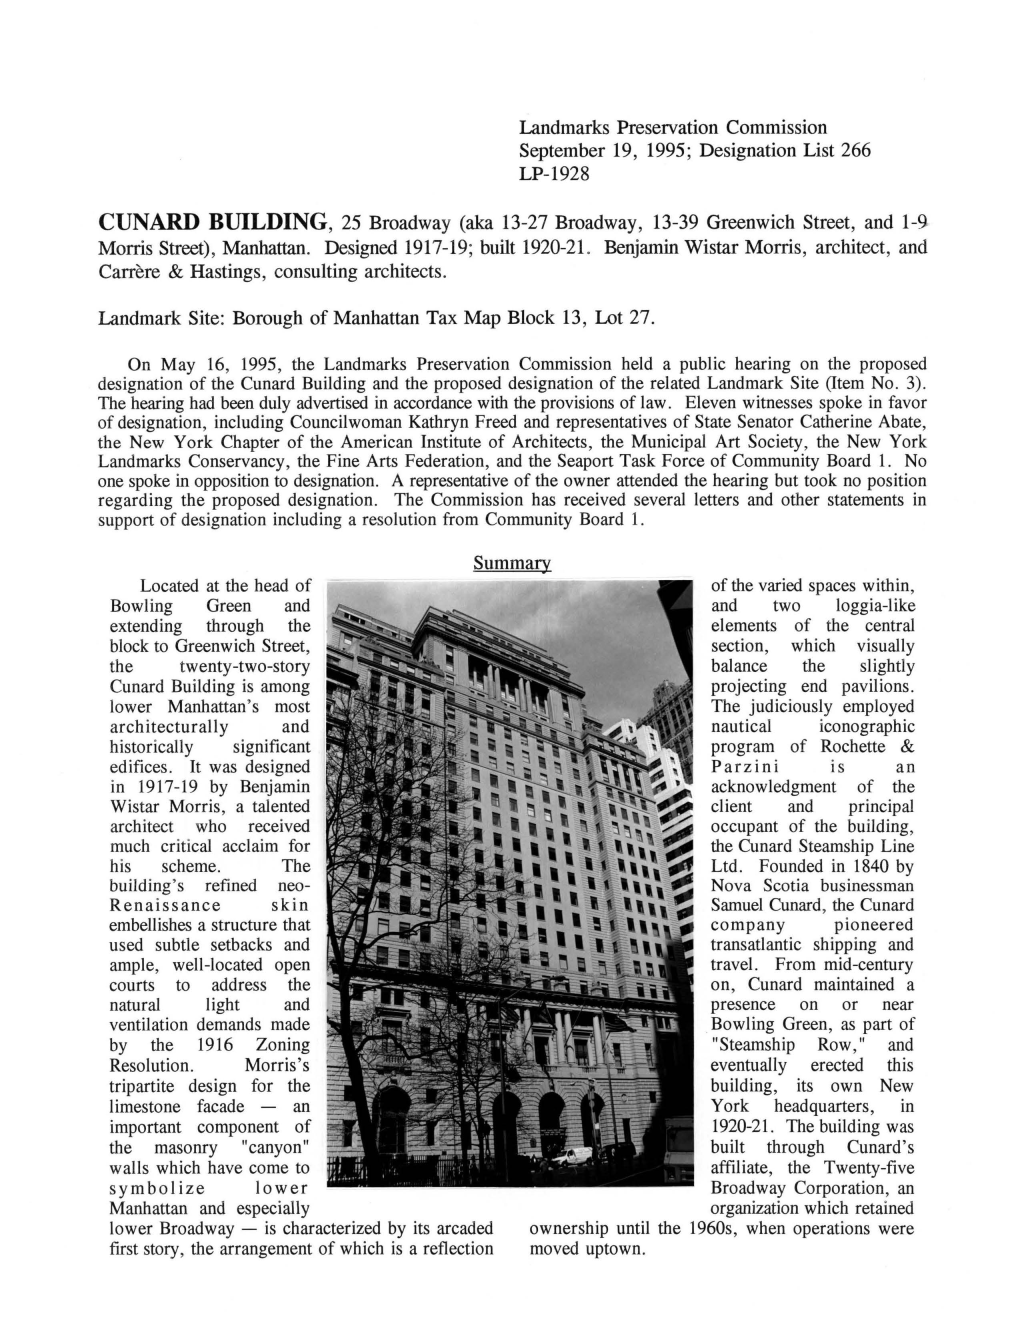 CUNARD BUILDING, 25 Broadway (Aka 13-27 Broadway, 13-39 Greenwich Street, and 1-9- Morris Street), Manhattan